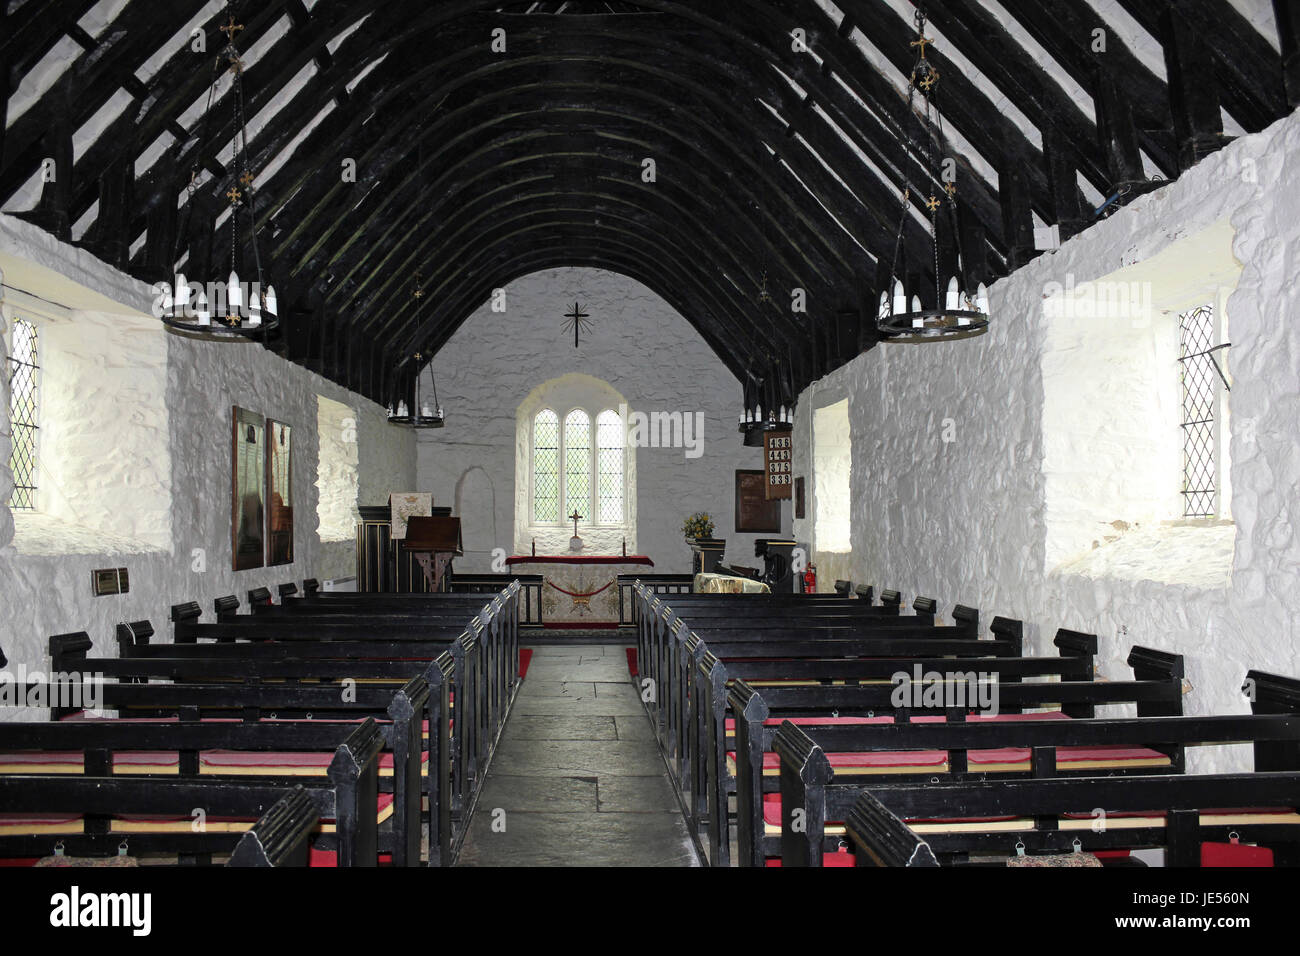 Intérieur de l'église médiévale de St Mary's, Caerhun, au Pays de Galles Banque D'Images